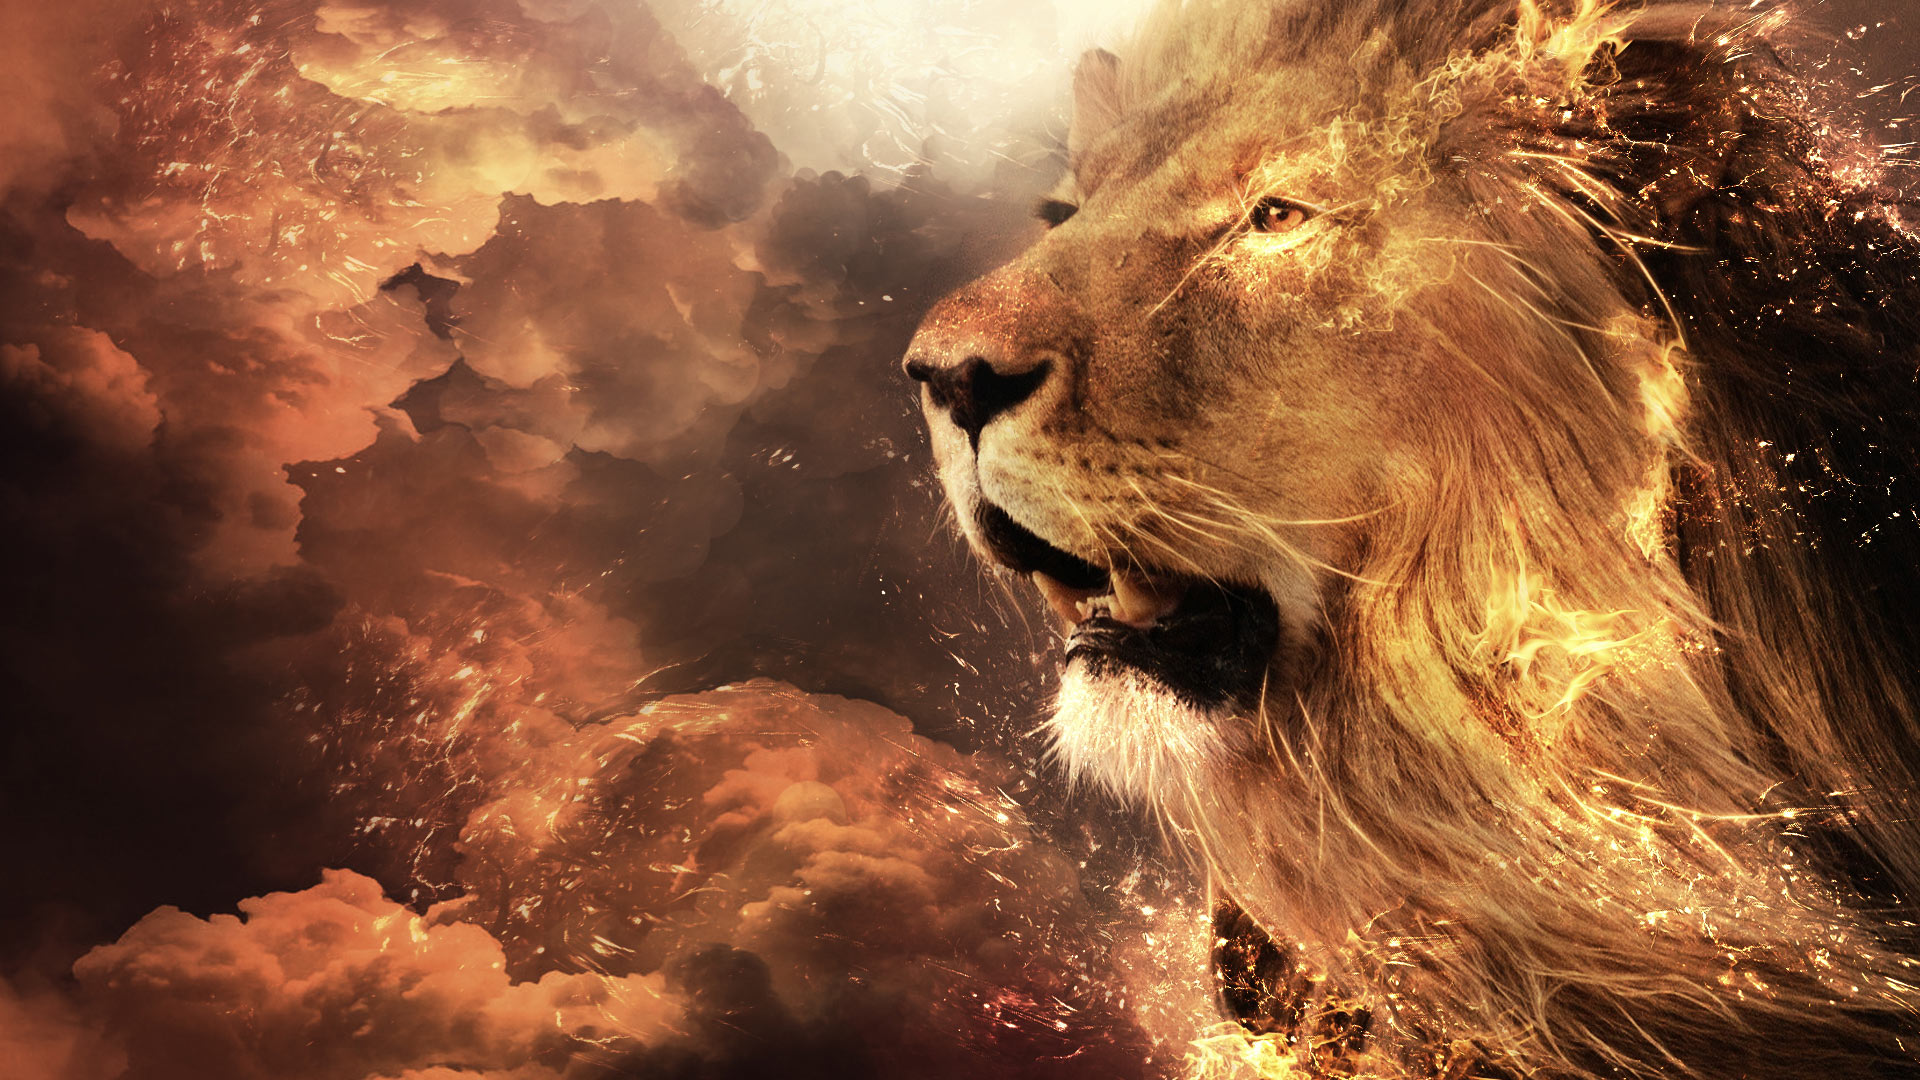 Render Lion Sky On Fire Clouds Art Digital Desktop Background